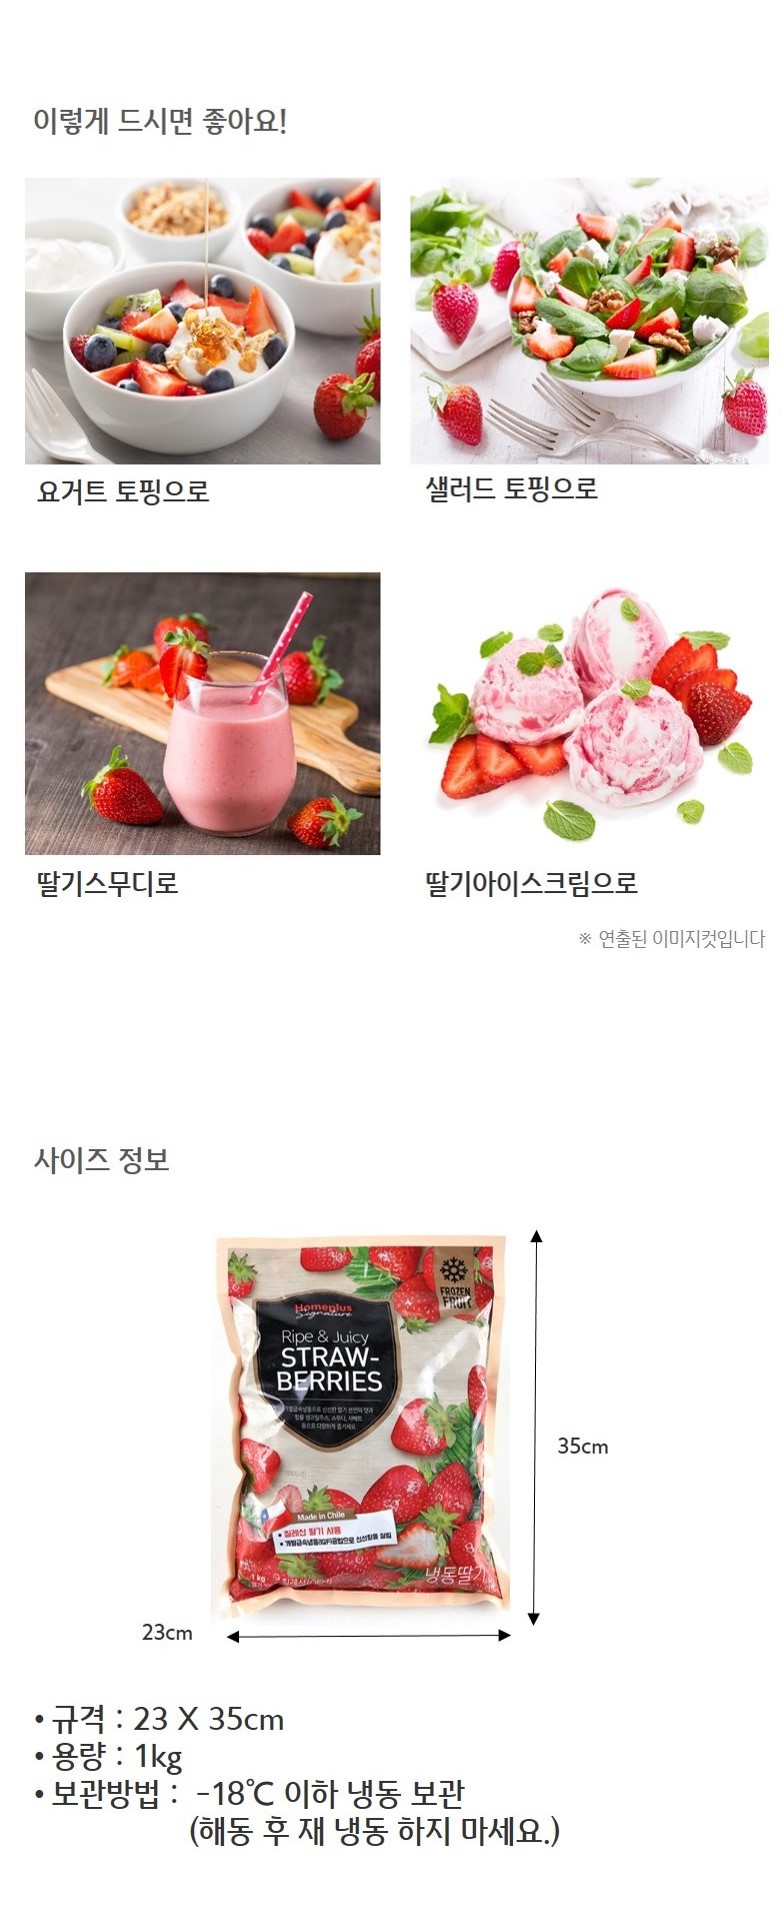 韓國食品-[Homeplus] 冷凍士多啤梨 1KG